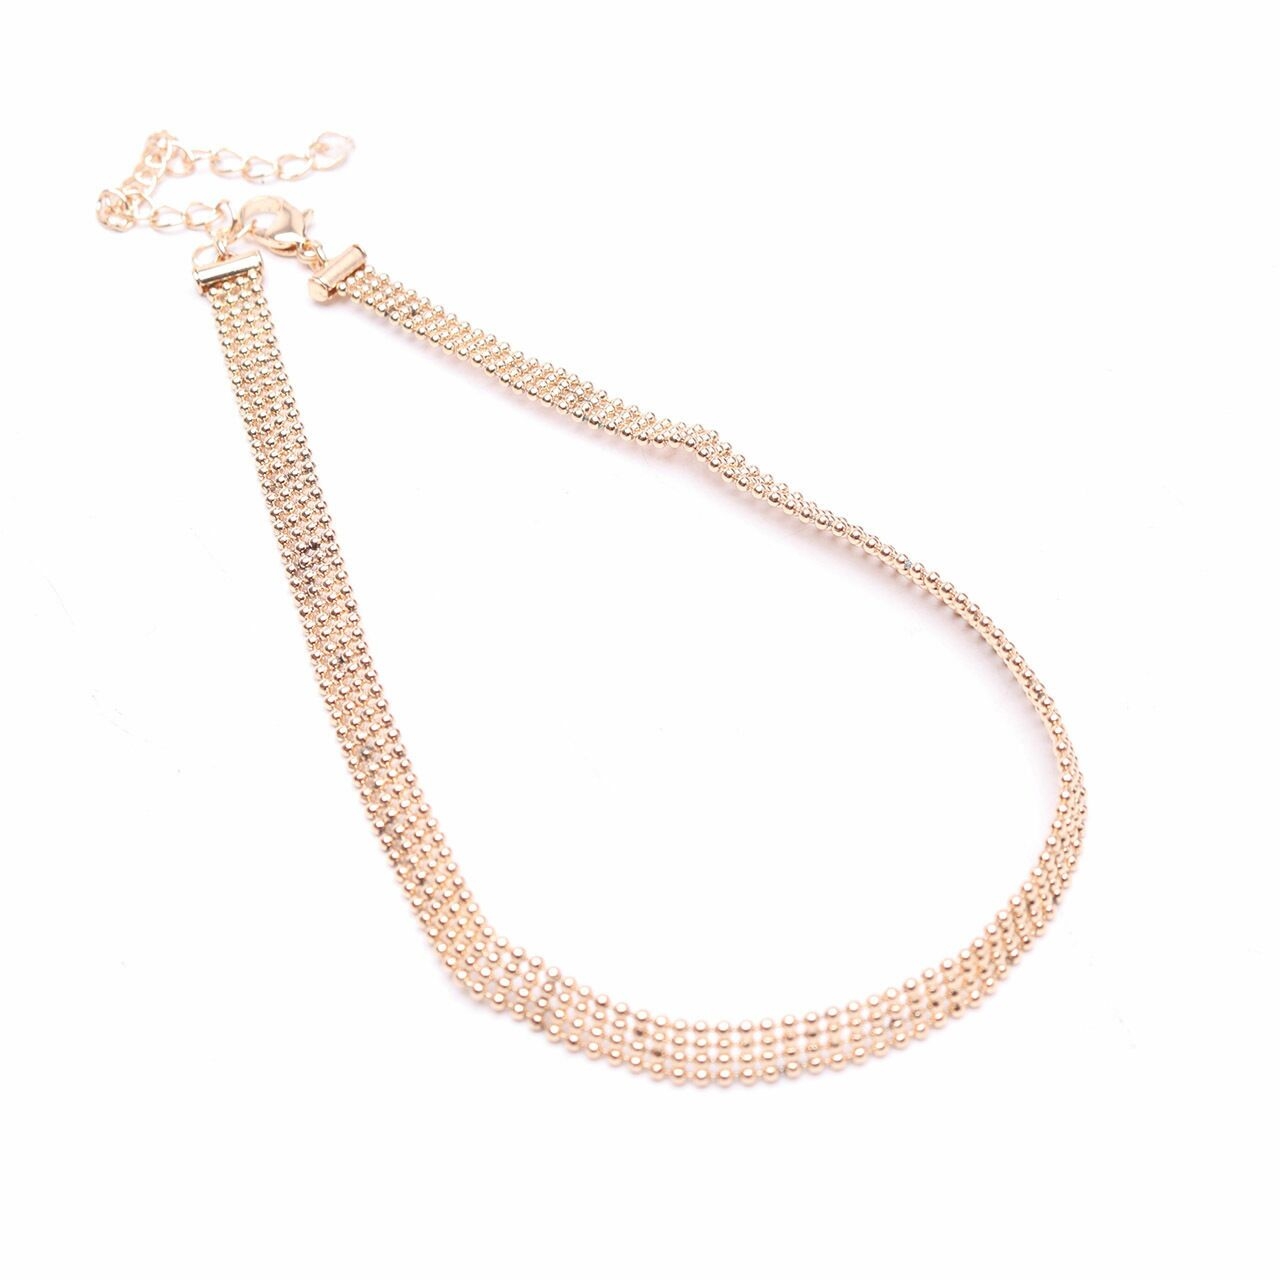 Bershka Gold Choker Necklace Jewelry